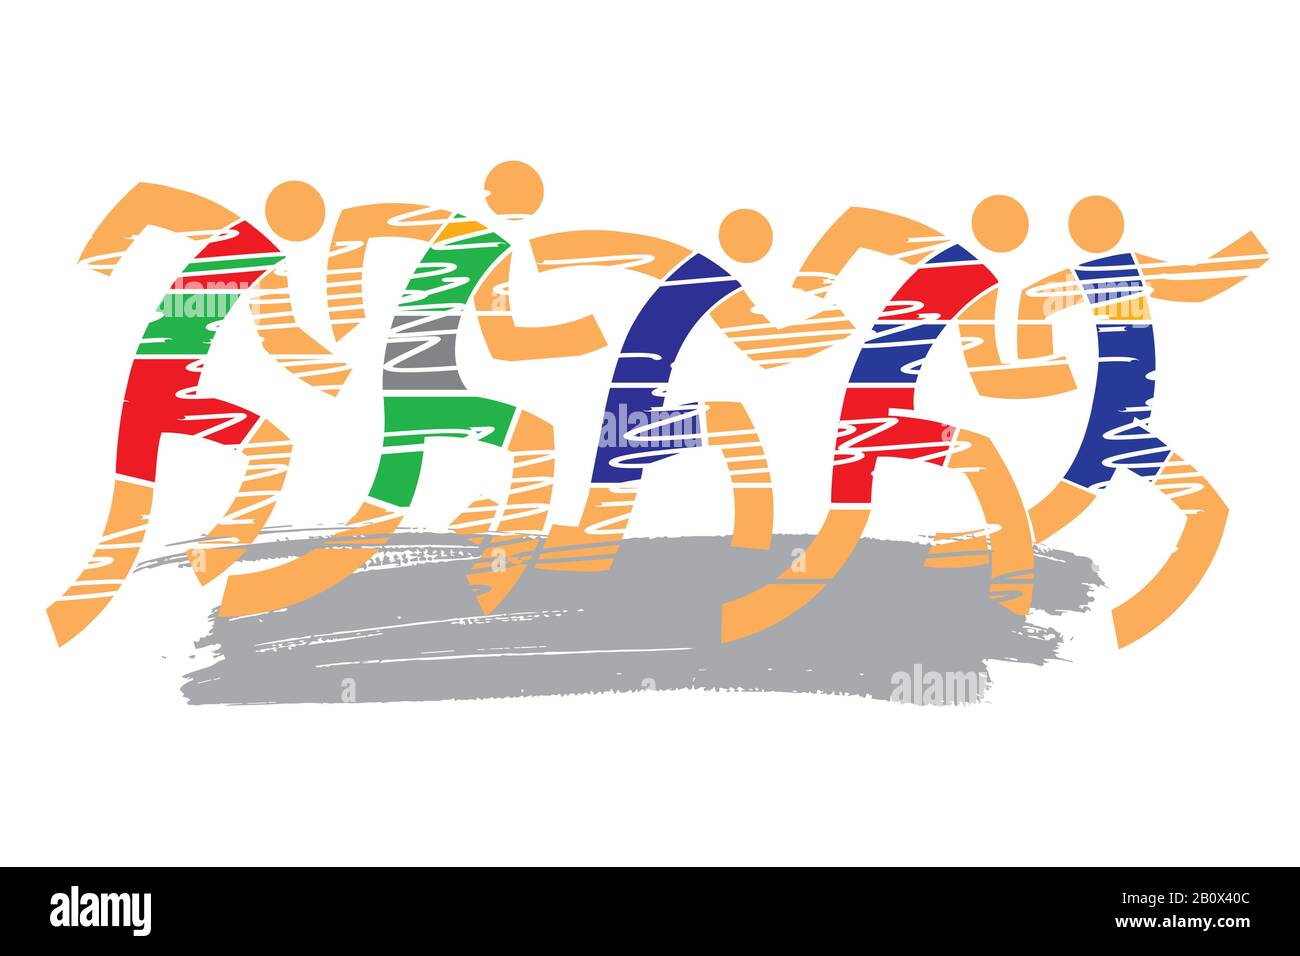 Compétition de course, marathon. Illustration stylisée colorée et expressive des coureurs de course. Vecteur disponible. Illustration de Vecteur